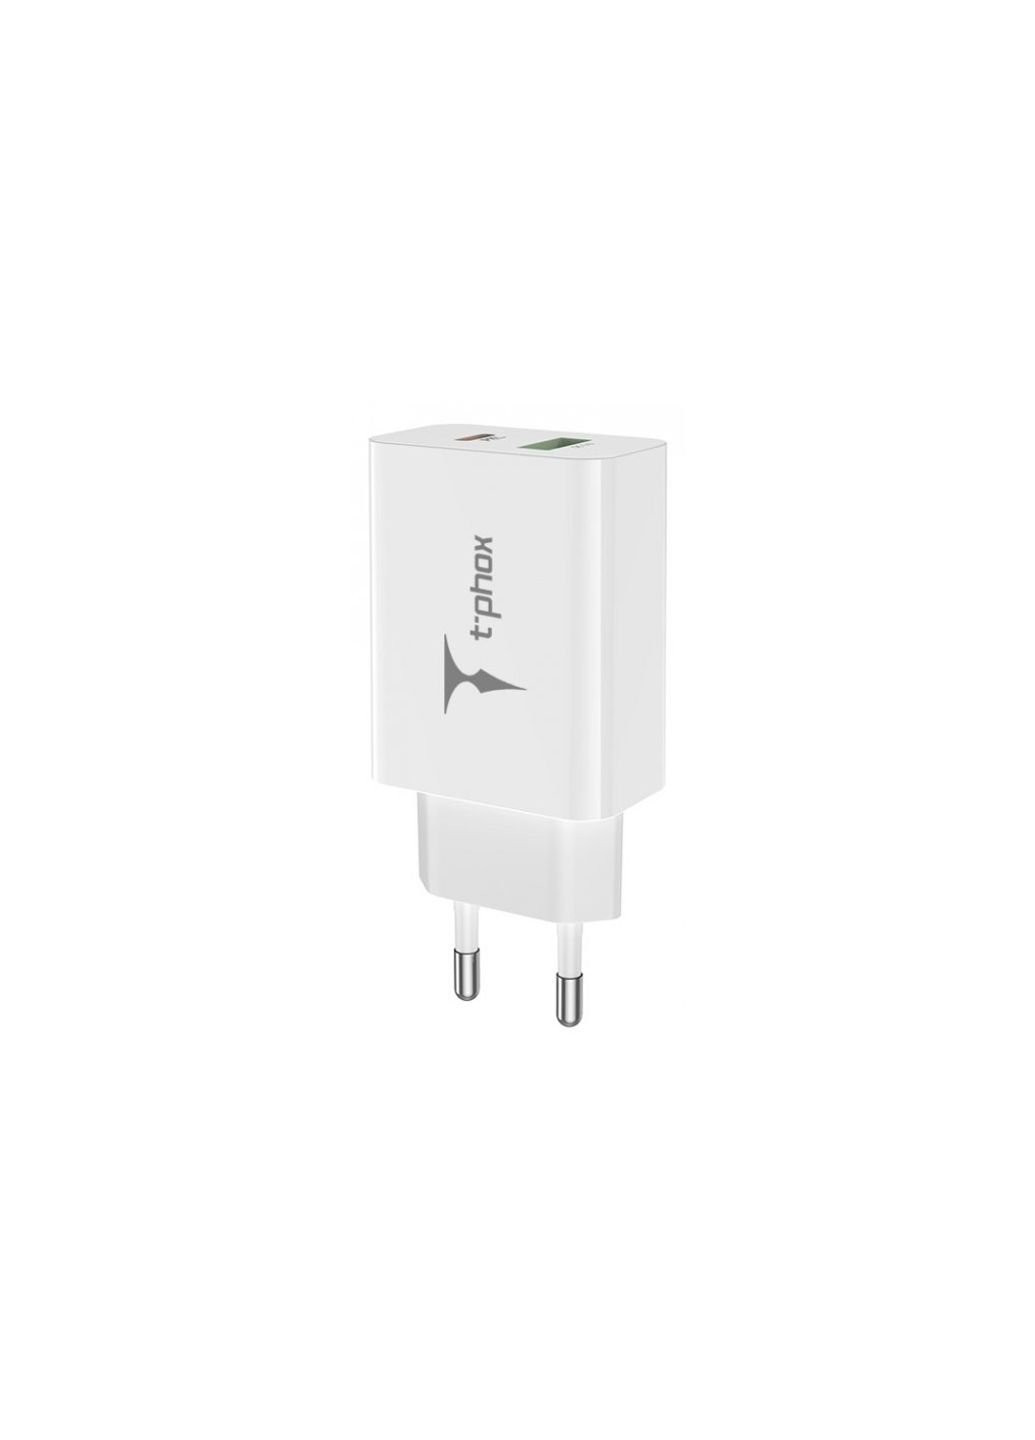 Зарядний пристрій (Speedy 20W PD+USB) T-PHOX speedy 20w 2ports type-c+usb charger (white) (253507386)